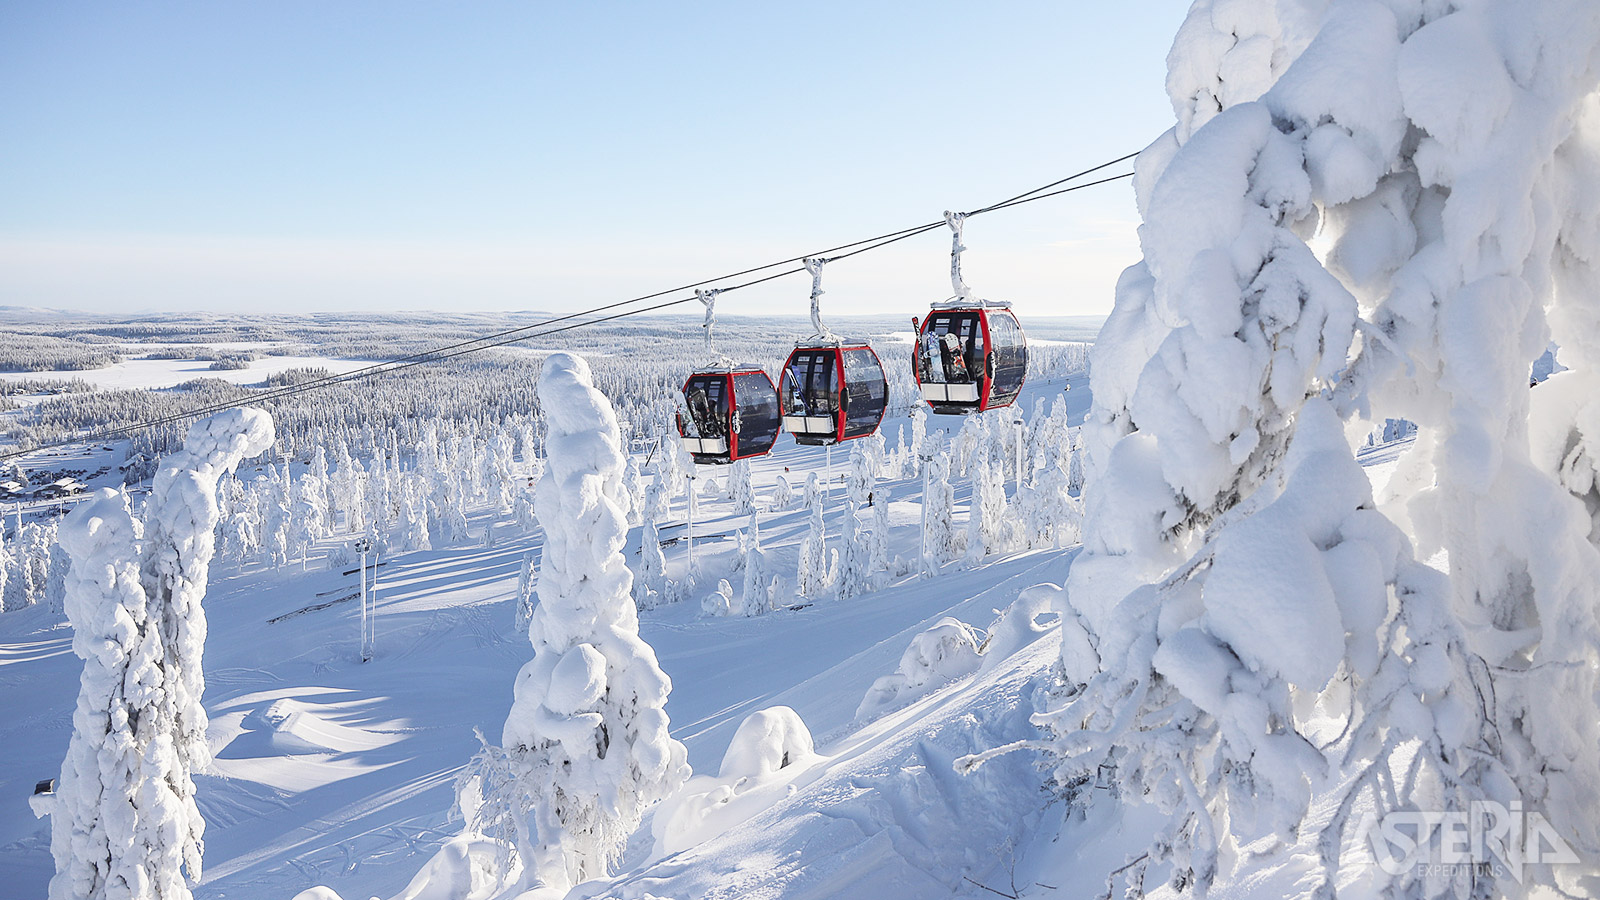 Ruka is een gezellig dorpje op 25km van Kuusamo en tevens het oudste en wellicht beroemdste skioord van Finland